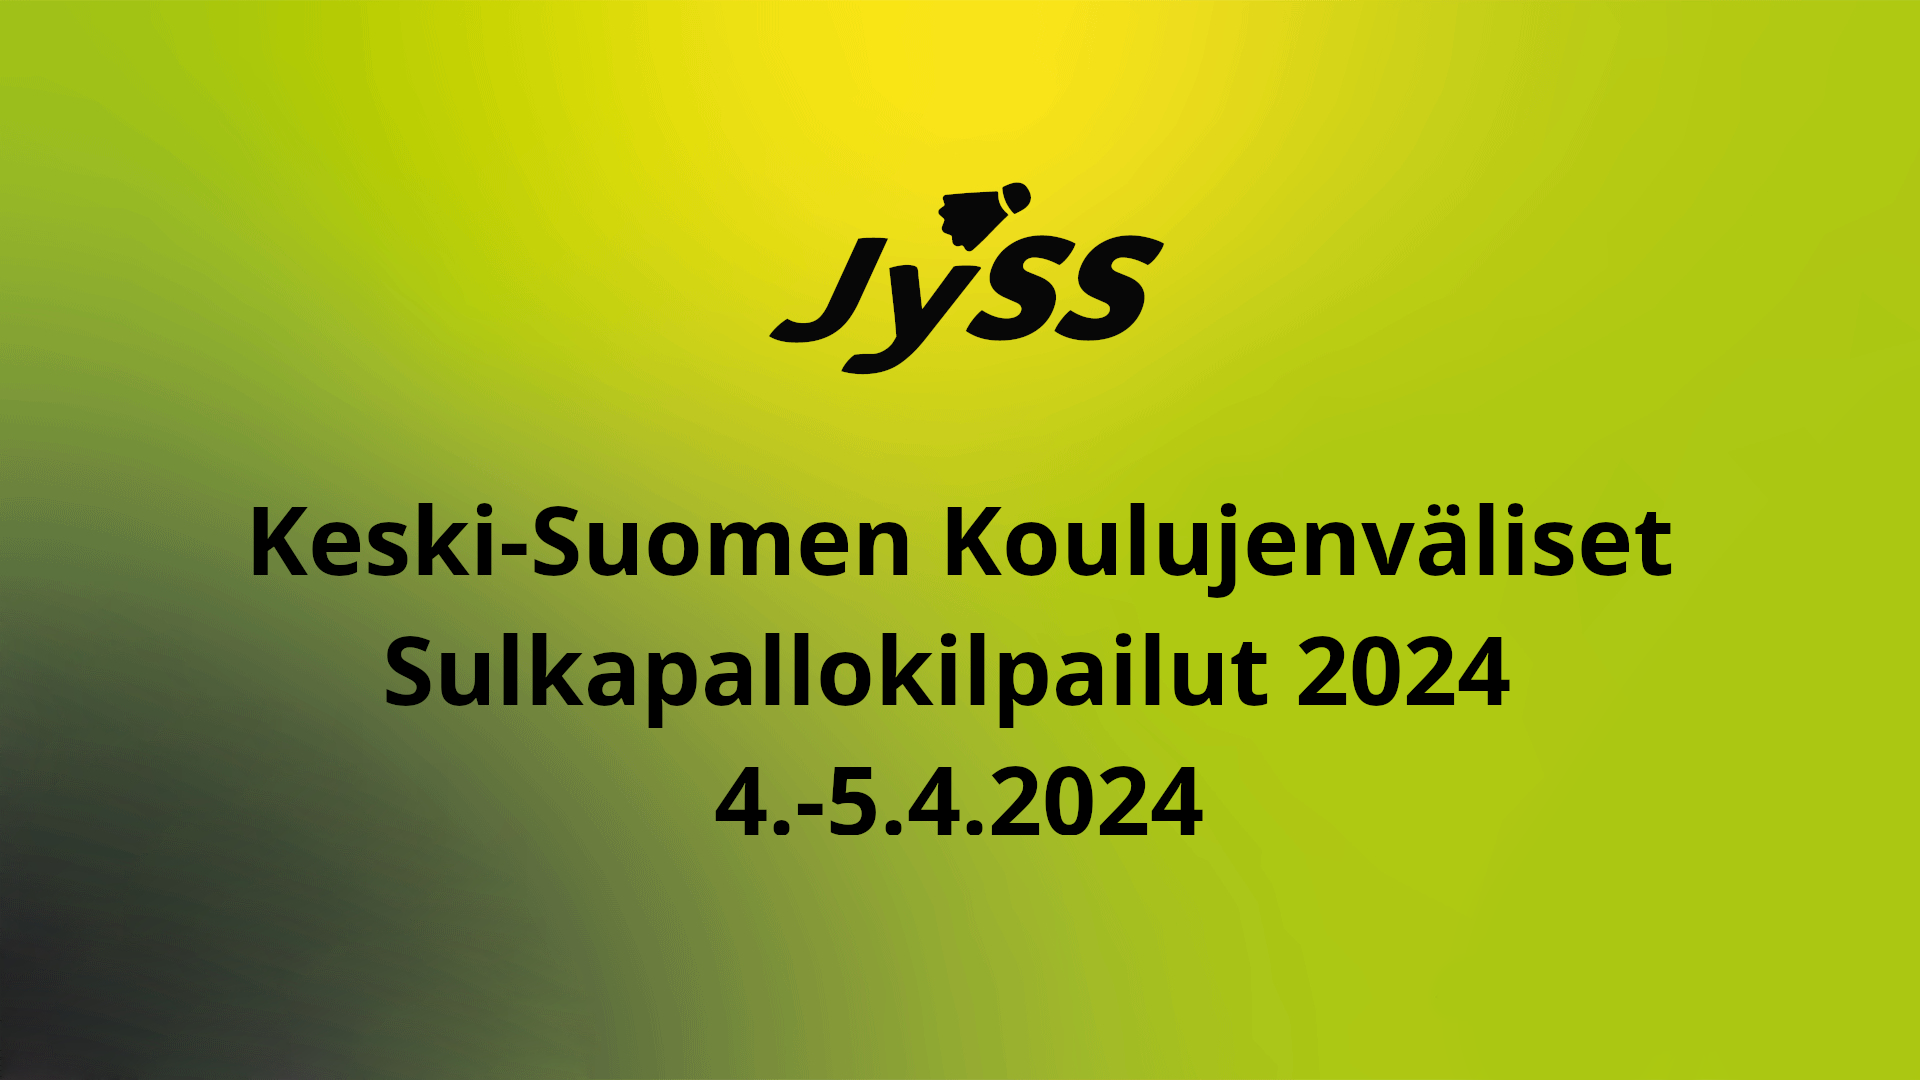 JYSS_livestream_keskisuomen_koulujenvaliset_2024.png